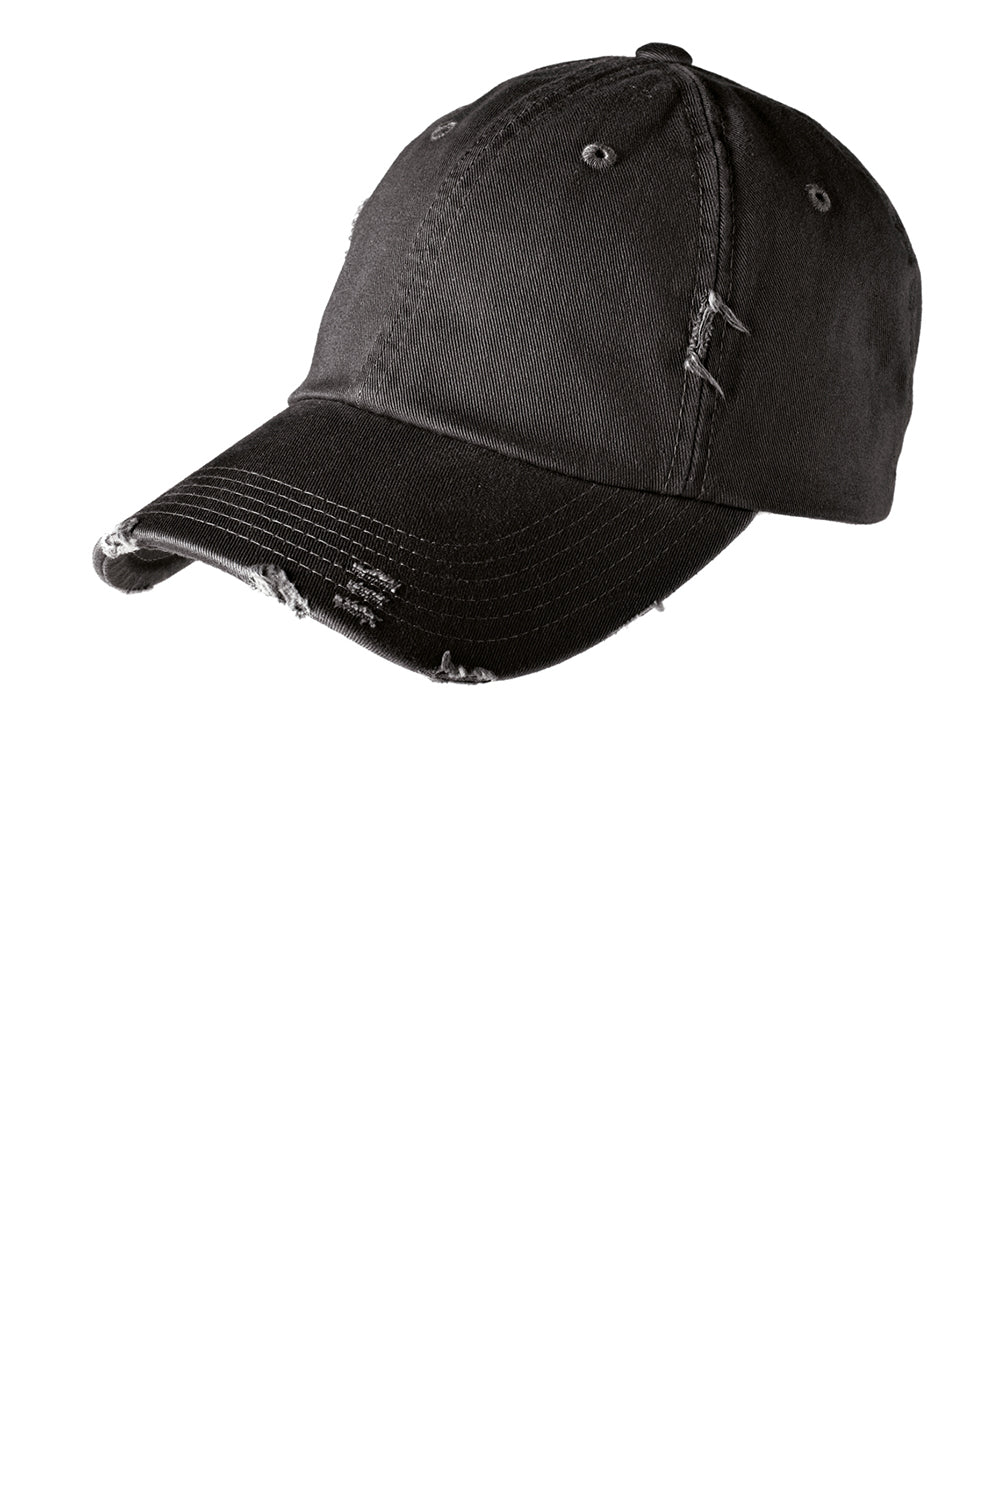 District DT600 Mens Adjustable Hat Black Front